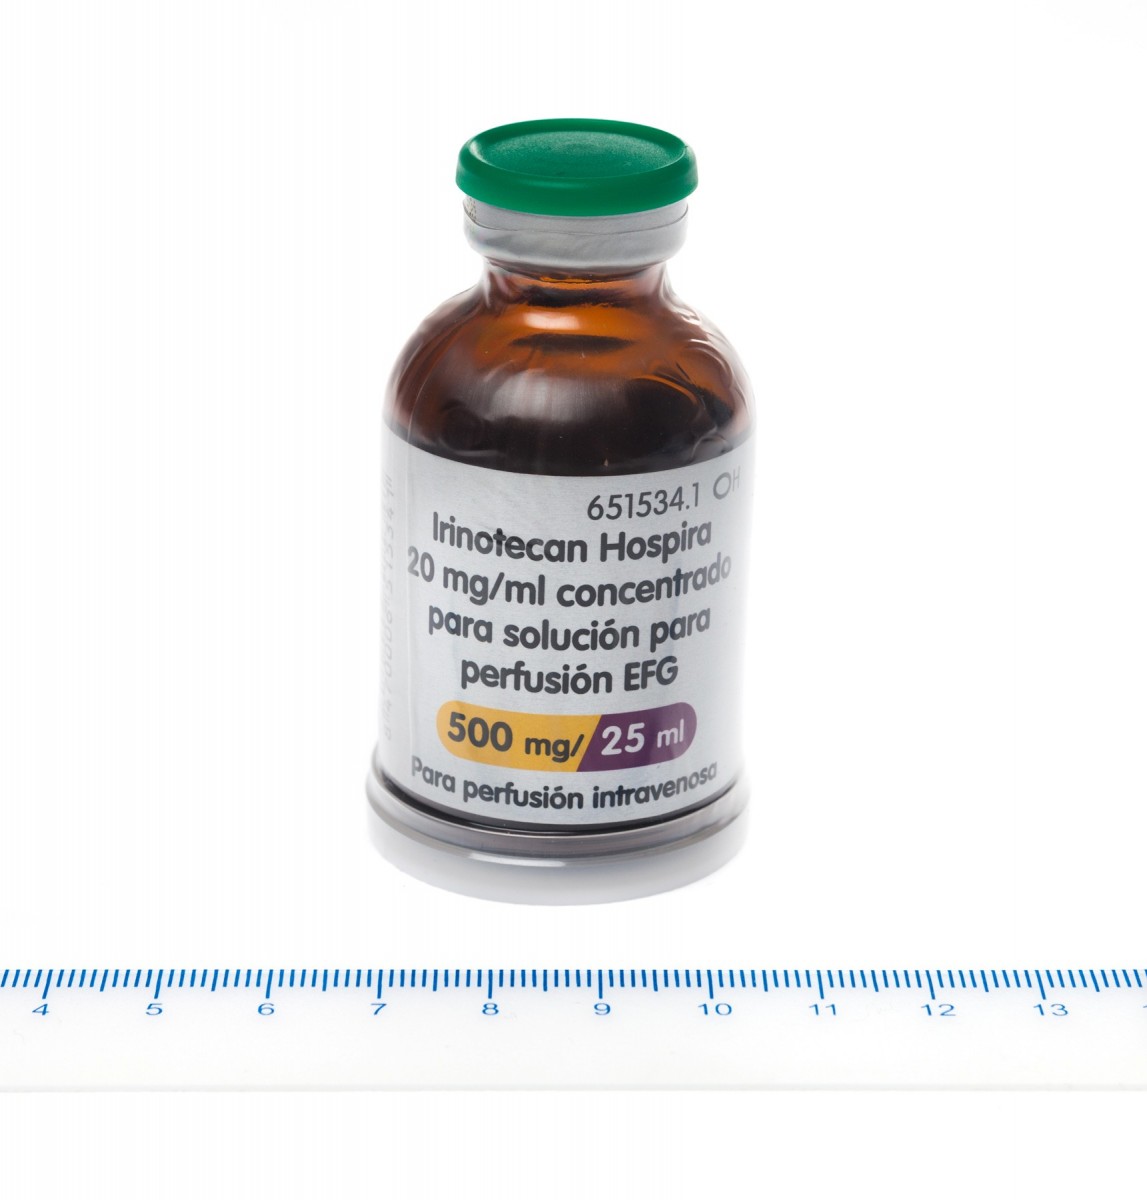 IRINOTECAN HOSPIRA 20 mg/ml CONCENTRADO PARA SOLUCION PARA  PERFUSION EFG , 1 vial de 5 ml fotografía de la forma farmacéutica.